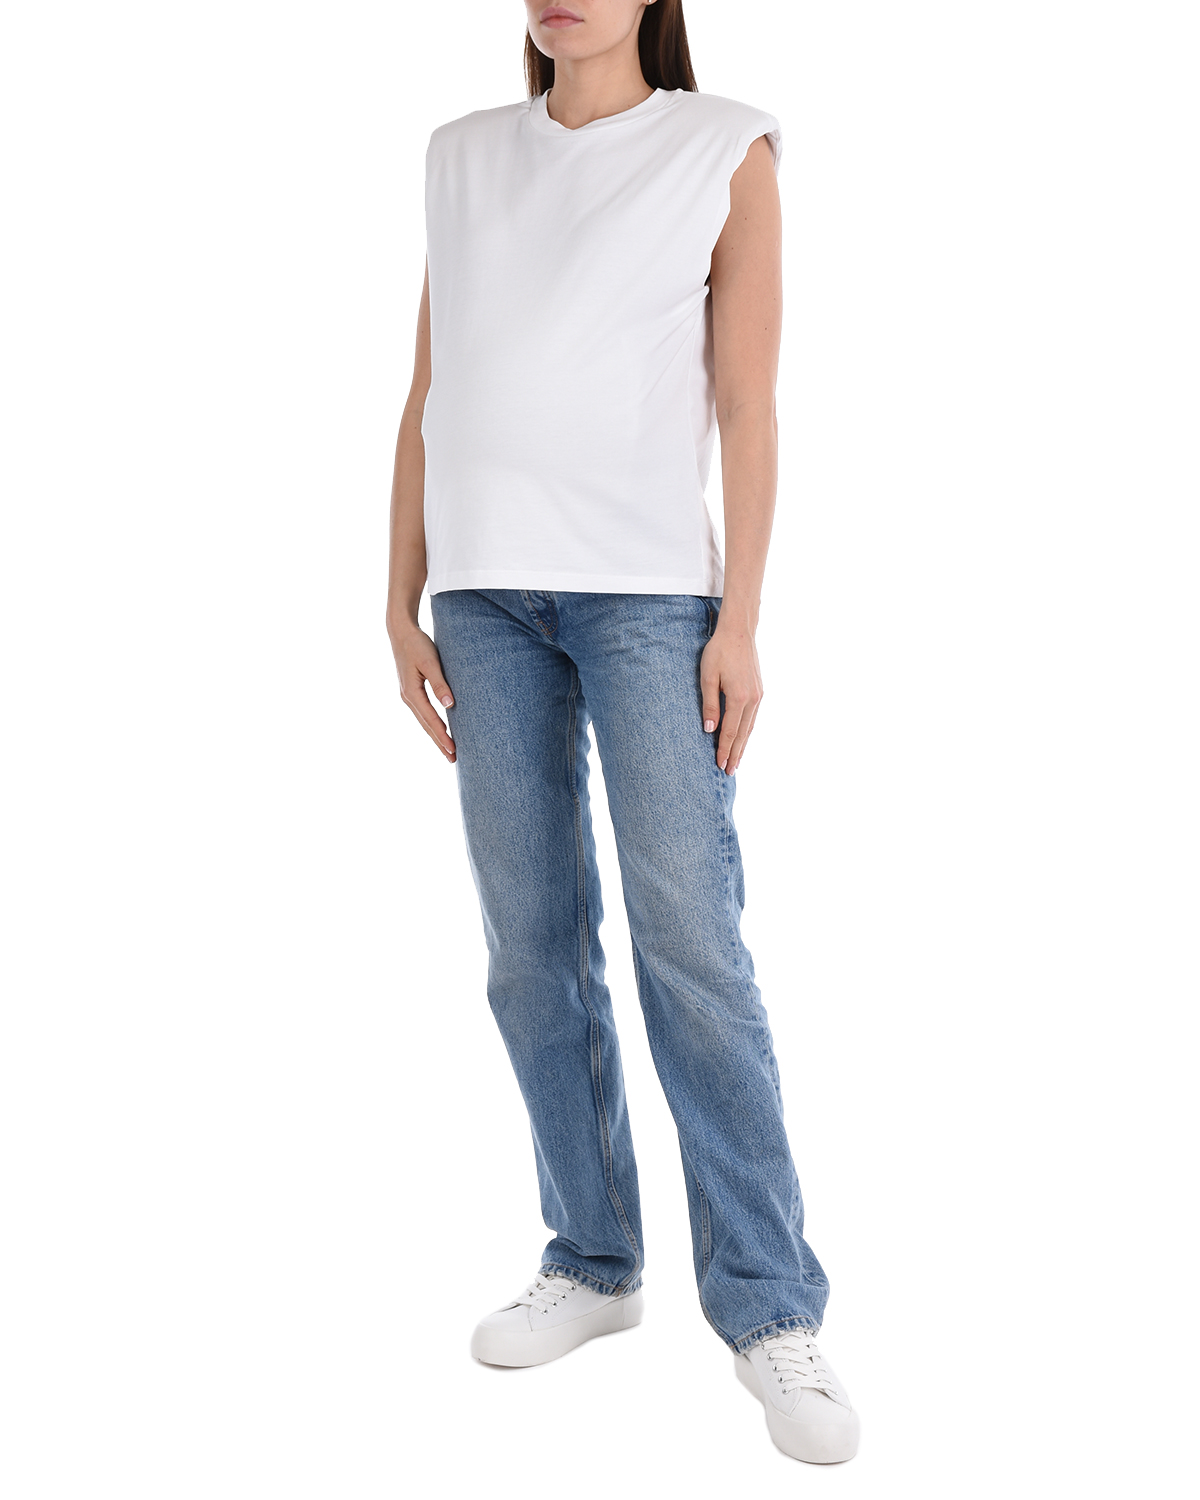 Белая футболка без рукавов Les Coyotes de Paris, размер 40, цвет белый - фото 4